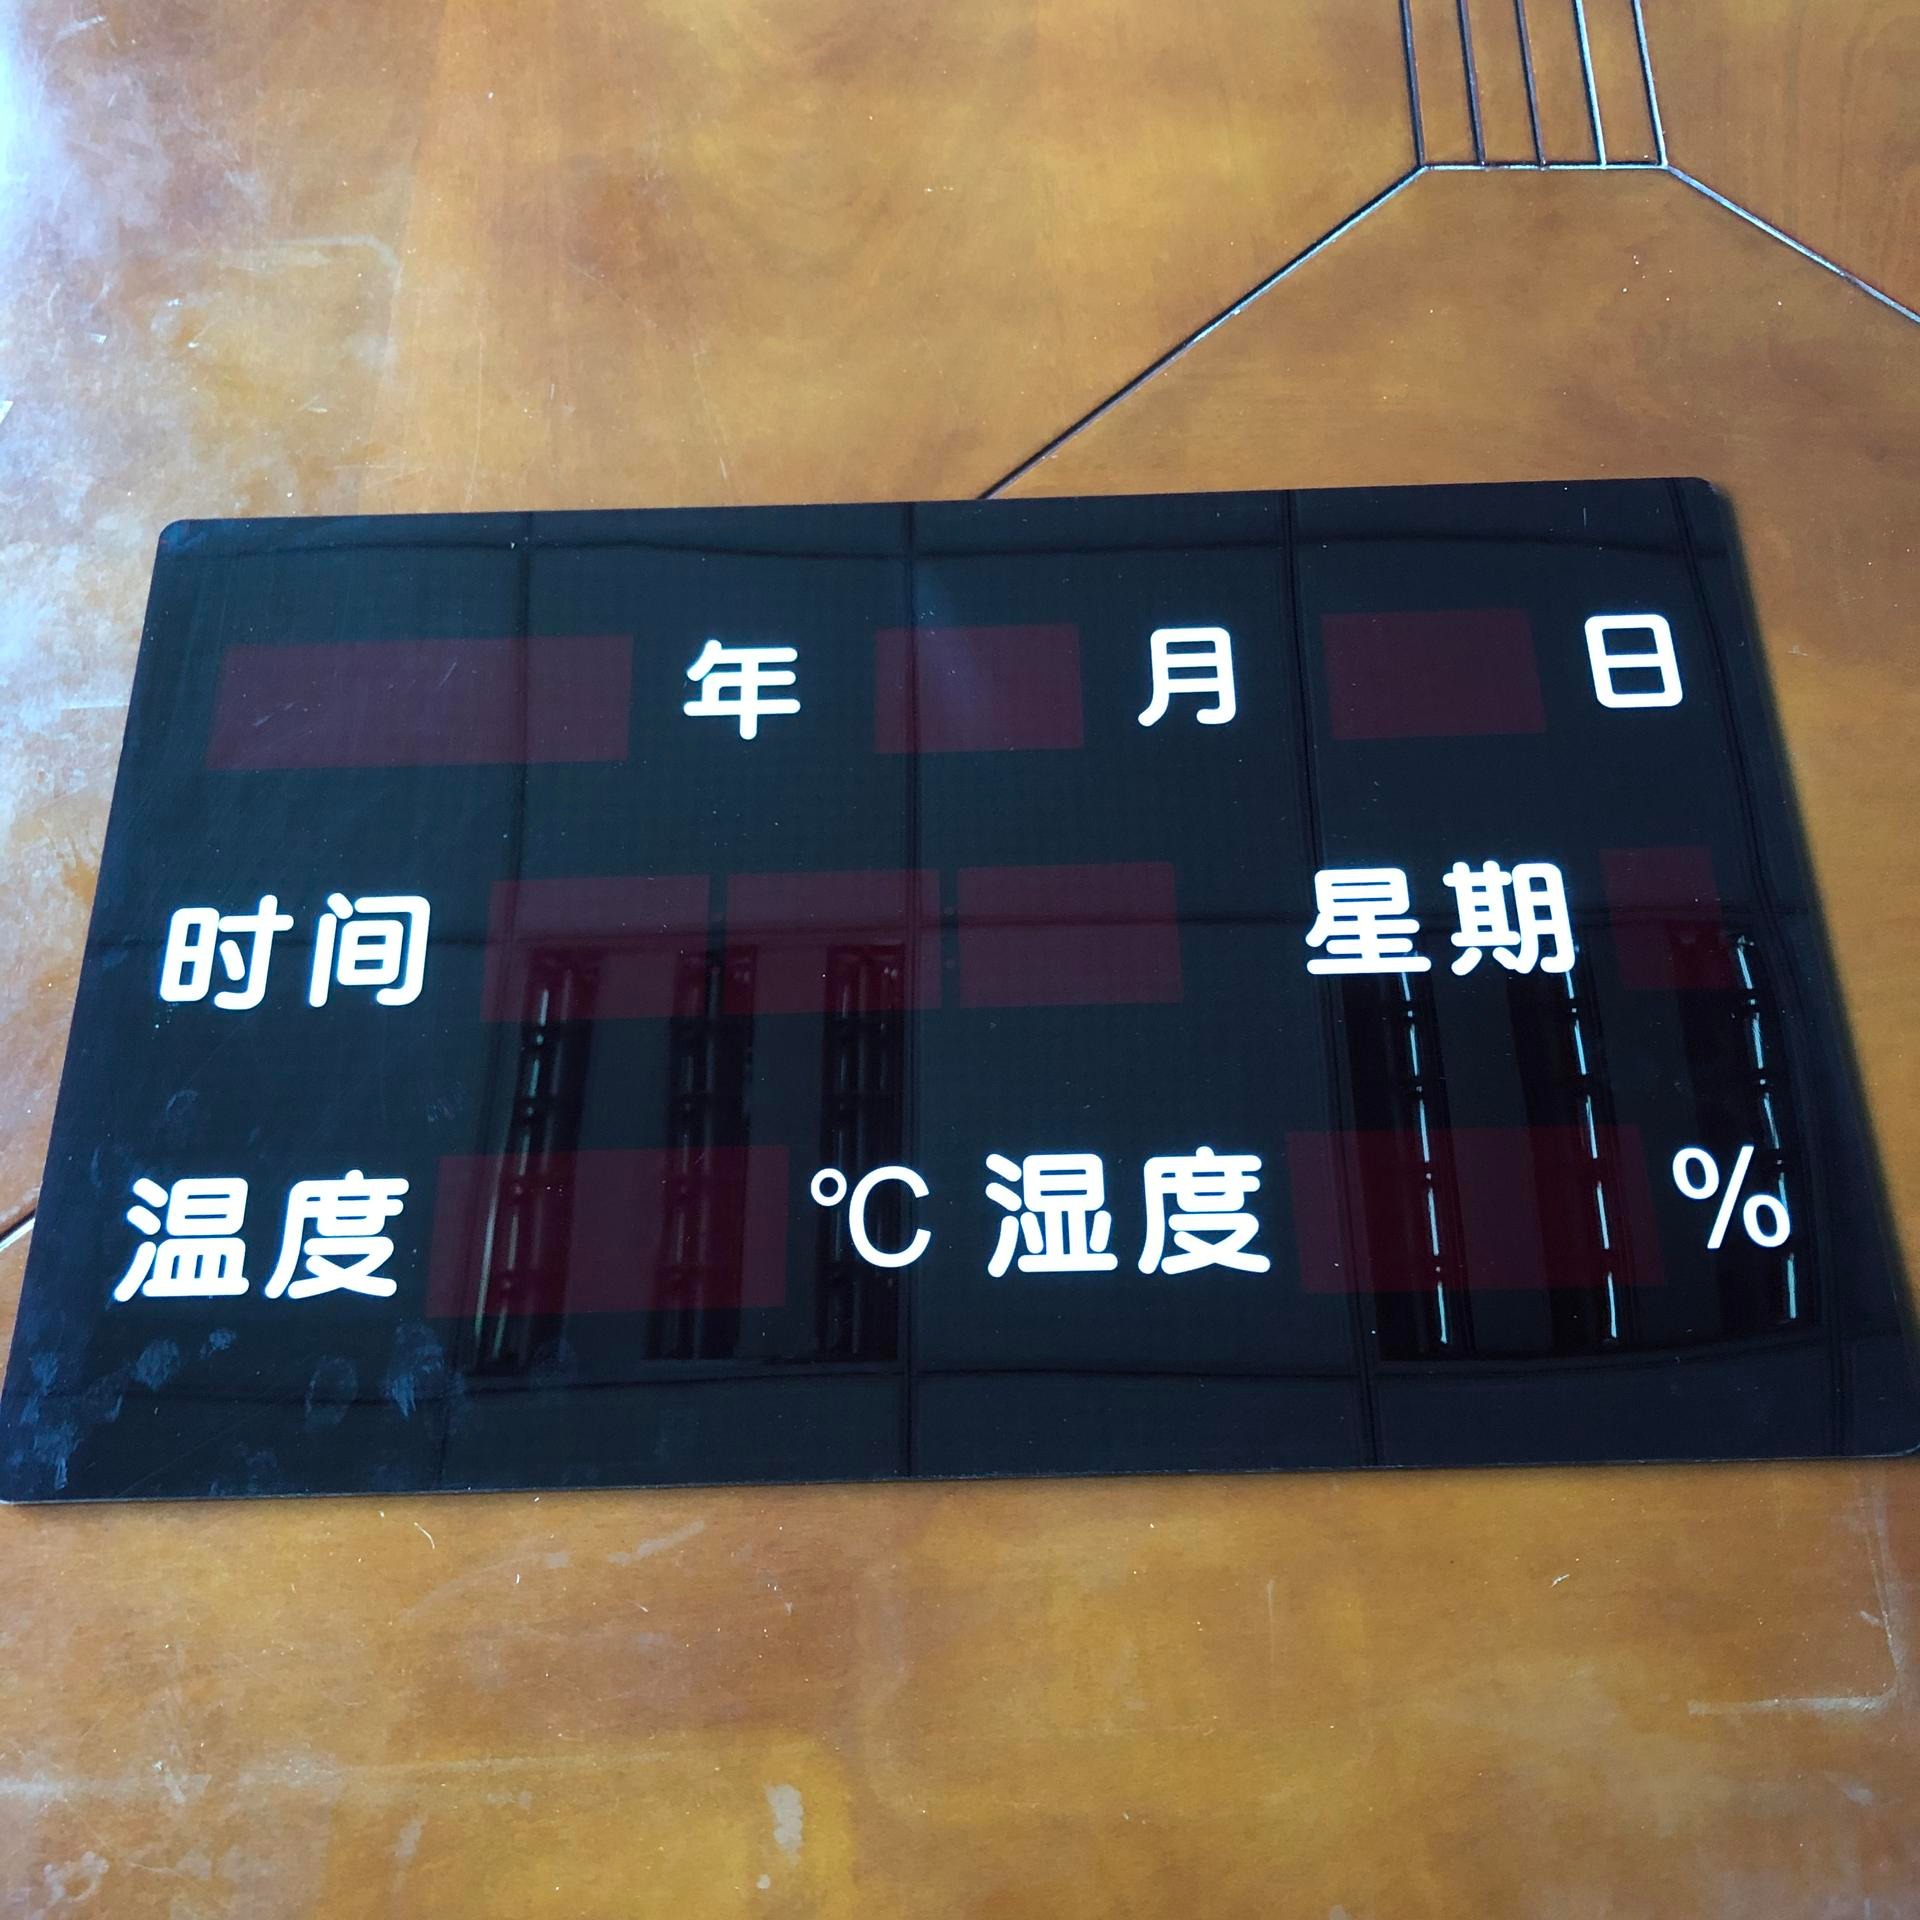 万年历亚克力面板 广告机多媒体终端机PC面板 定制大尺寸切割面板 CNC精雕丝印生产厂家图片